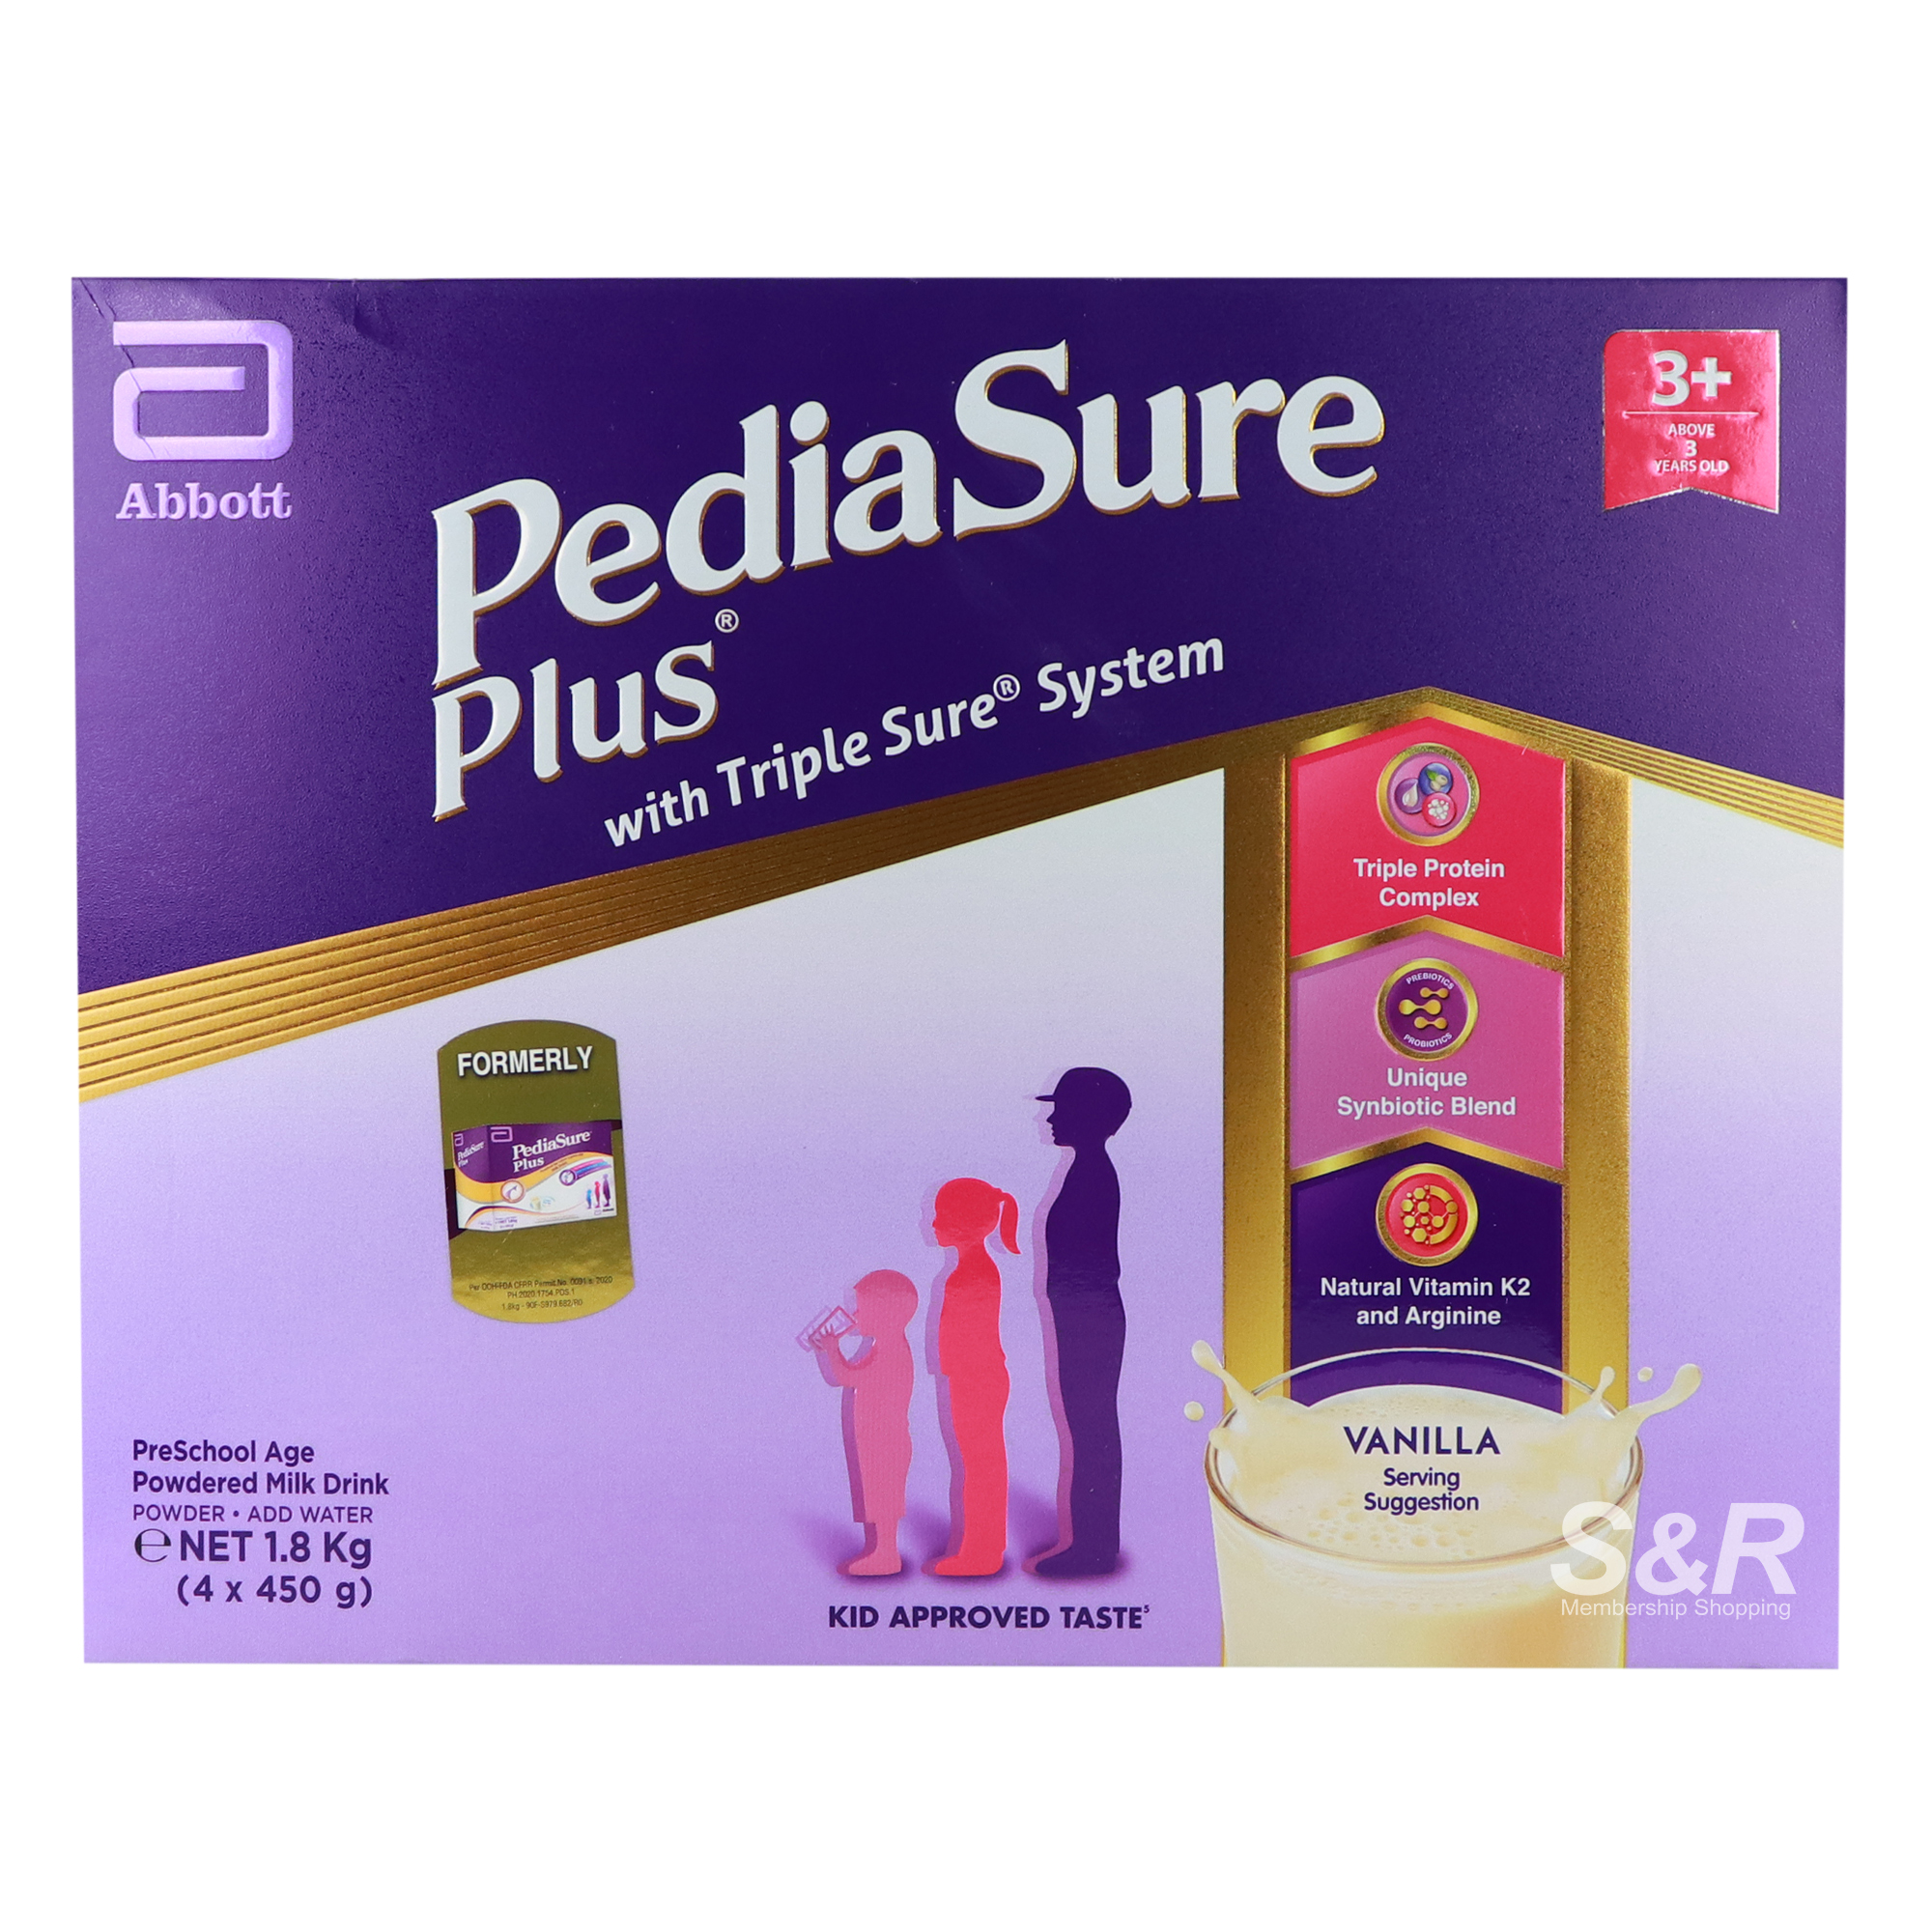 Pediasure Plus with Triple Sure System for PreSchool Age Vanilla Flavore1.8kg